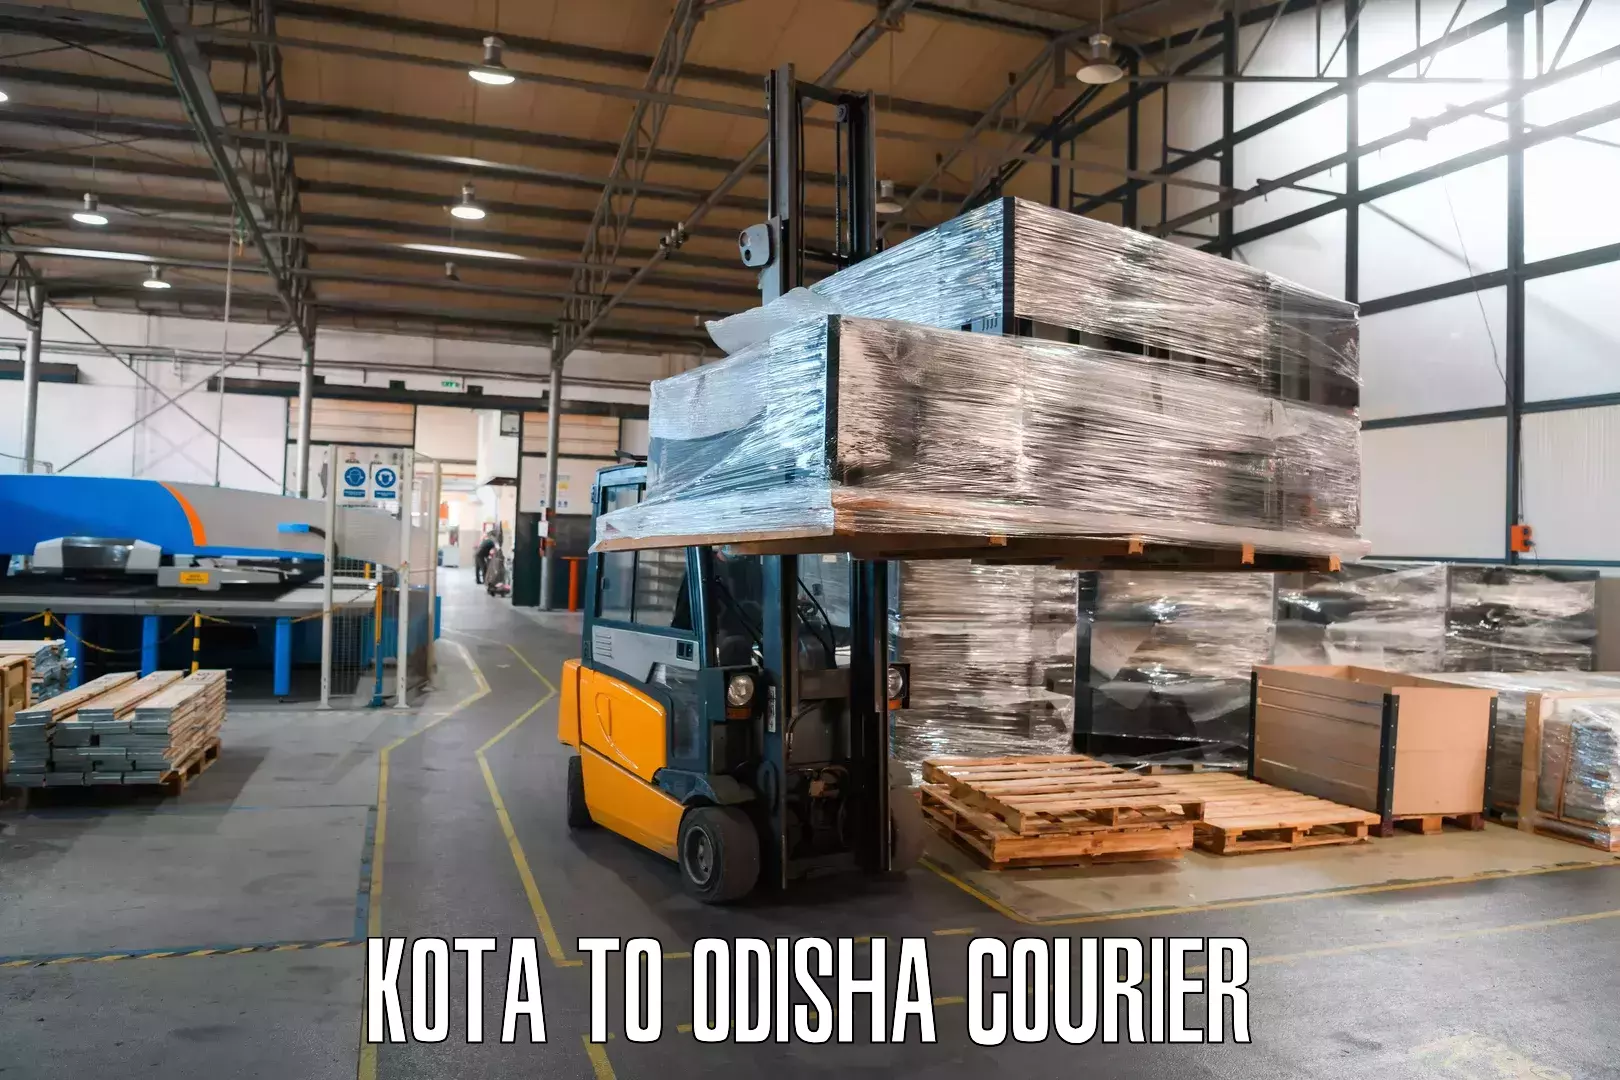 Express courier facilities Kota to Agarpada